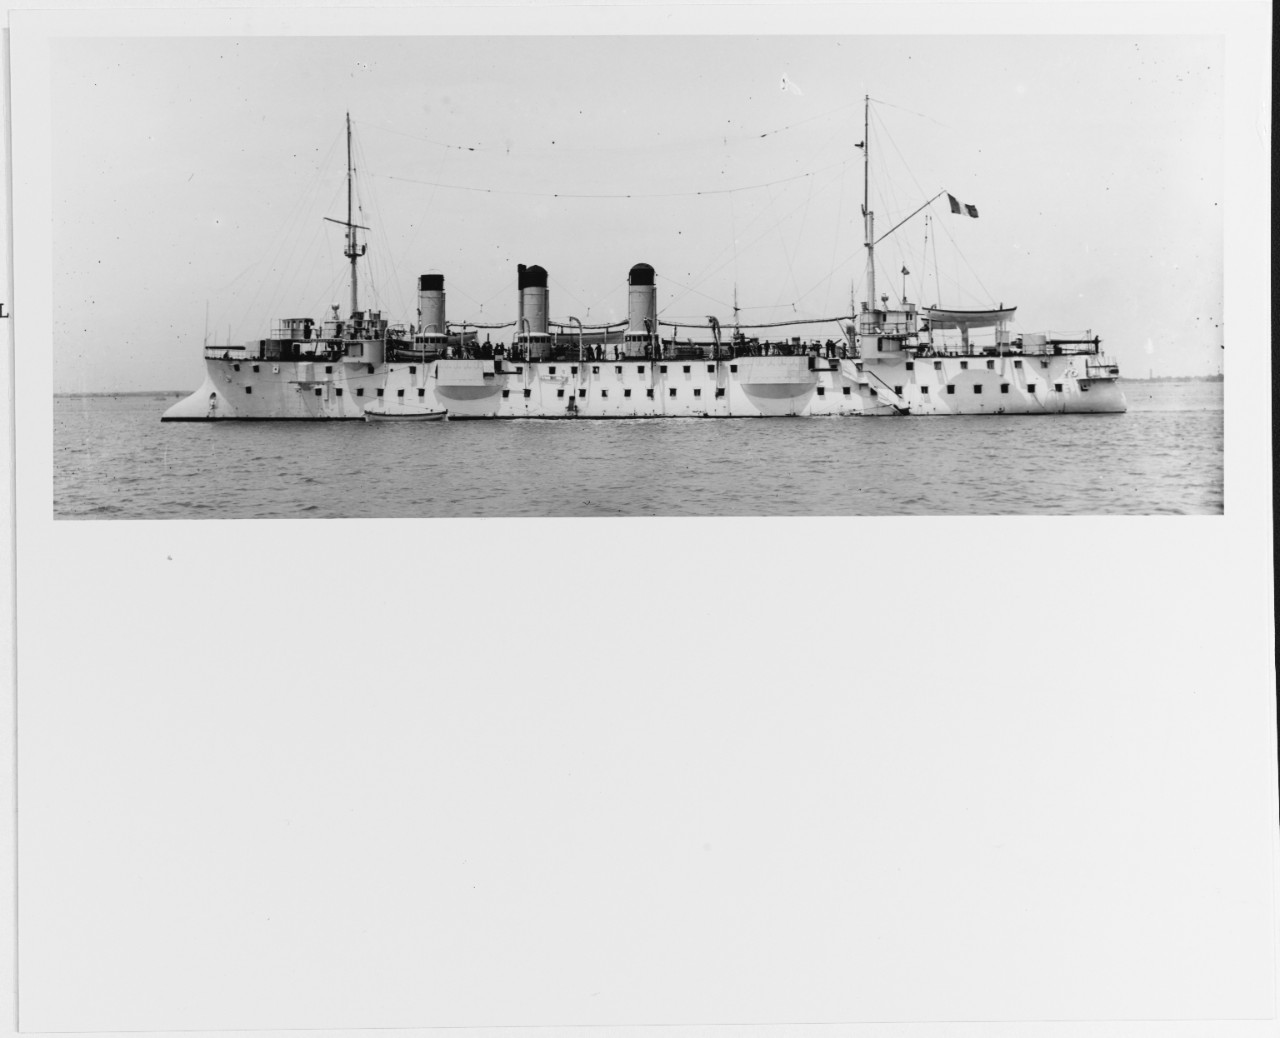 CHASSELOUP-LAUBAT (French cruiser, 1893)